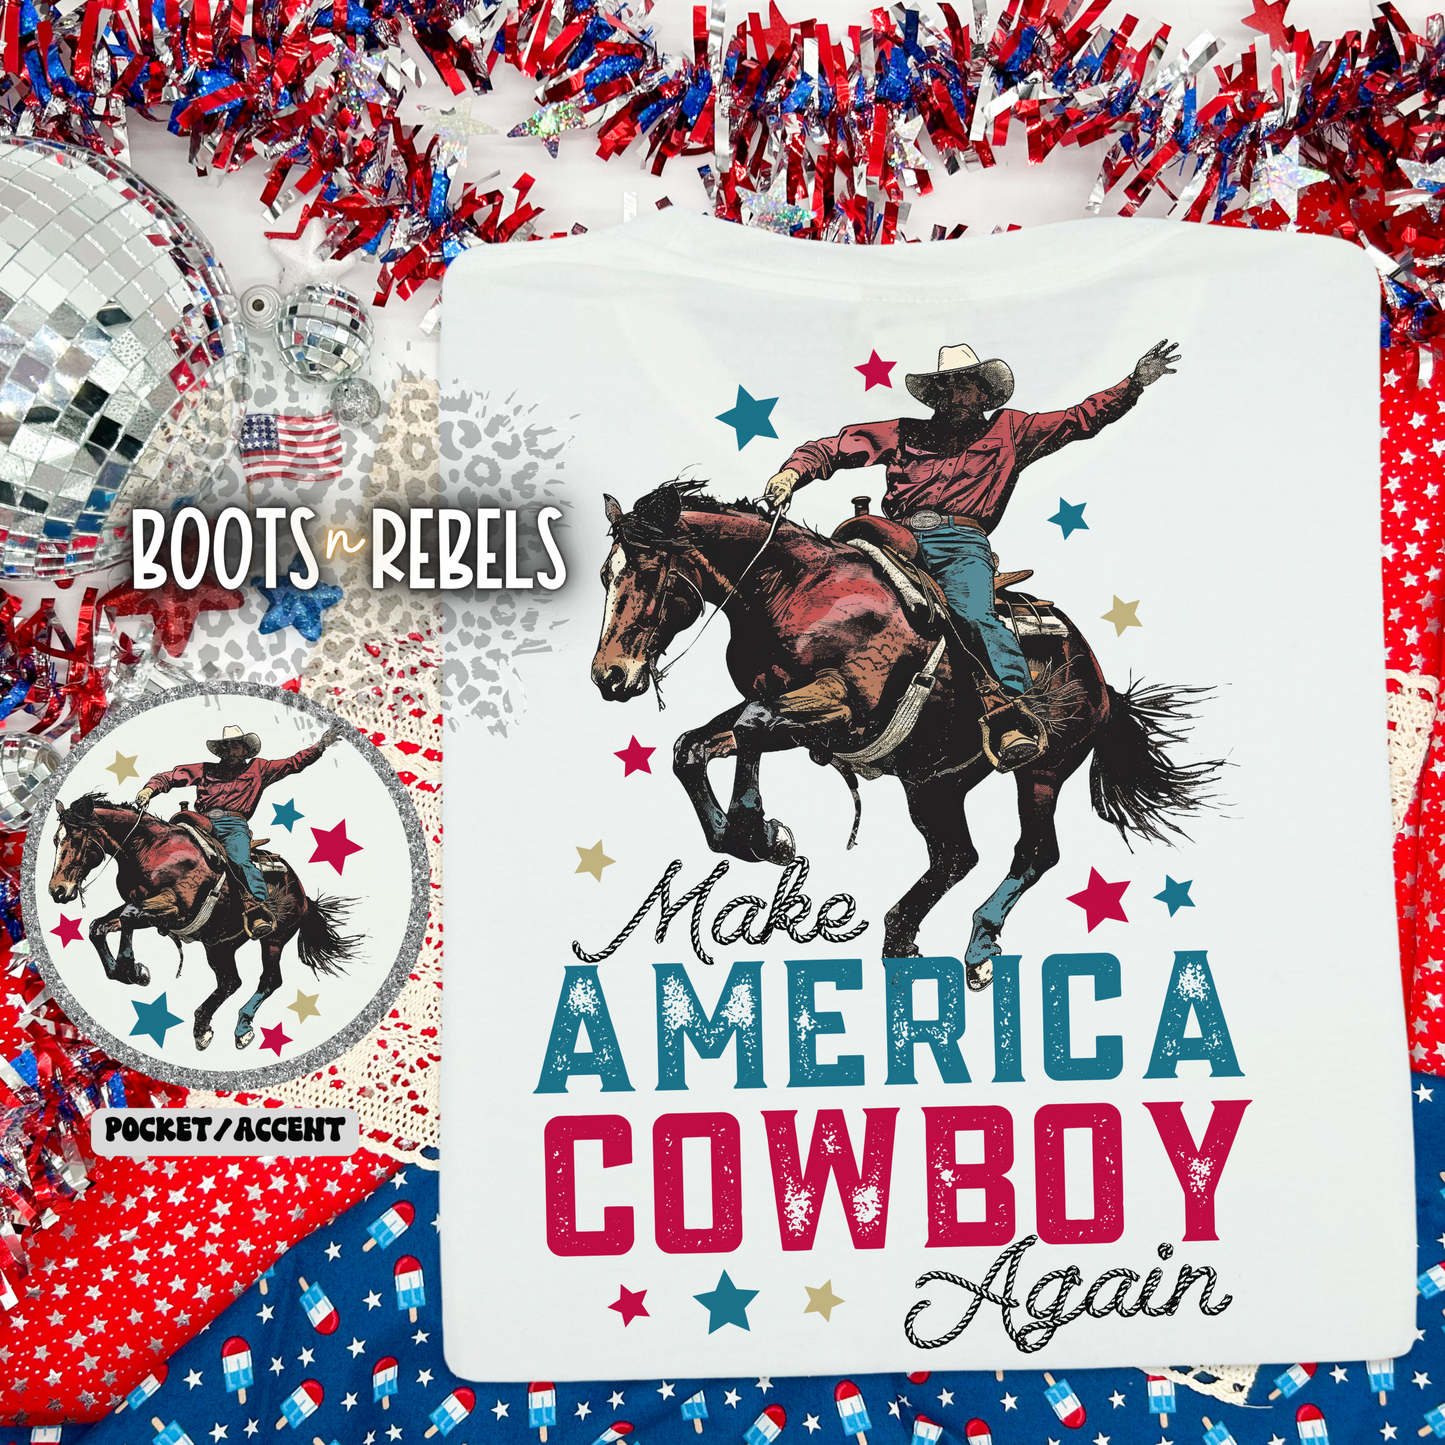 Make America Cowboy Again